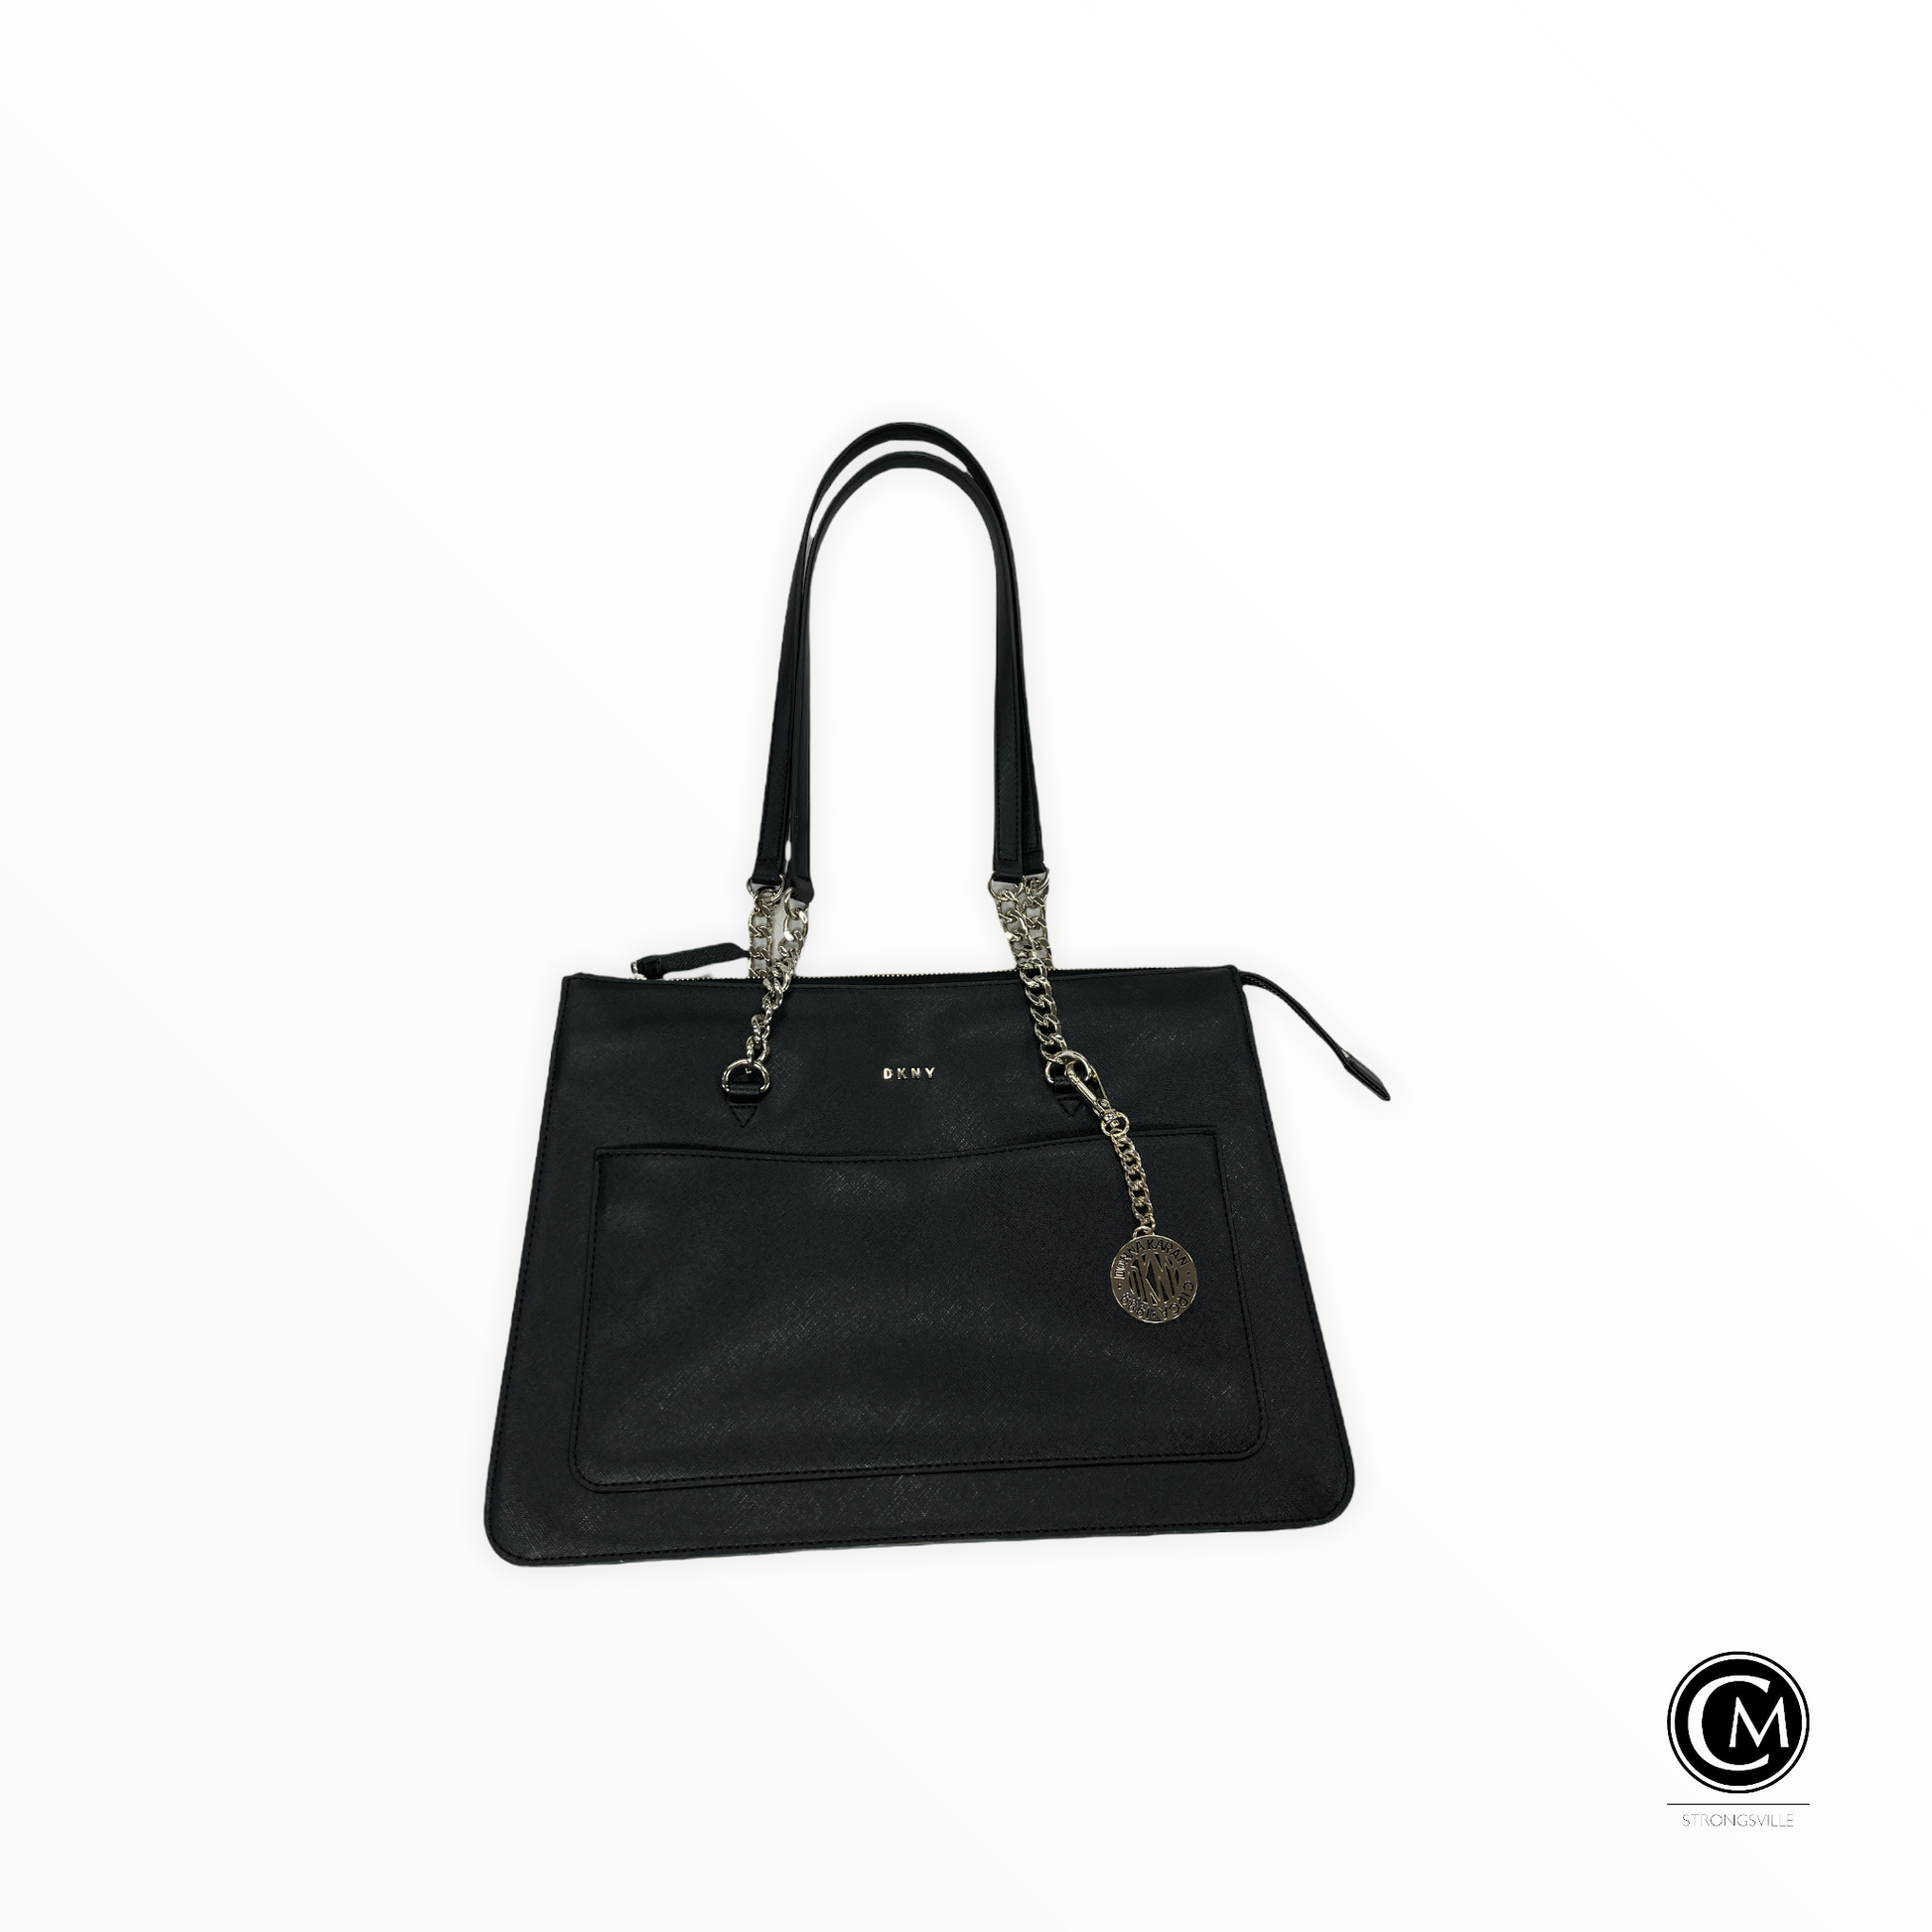 DKNY, DKNY Bags, Handbags, Purses & Clothing